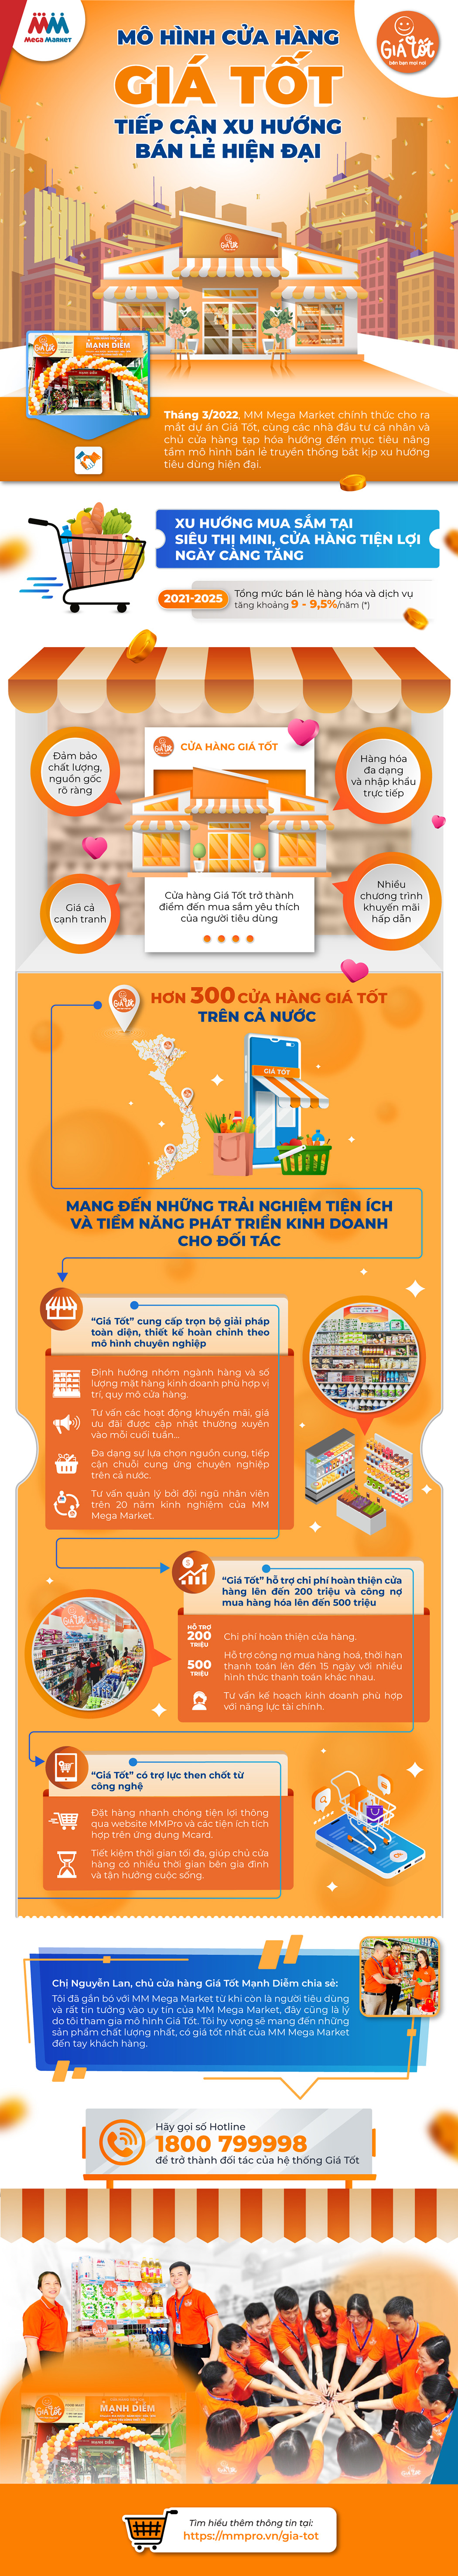 Mô hình kế toán quản trị trong các doanh nghiệp sản xuất sợi Việt Nam  Tạp  chí Tài chính